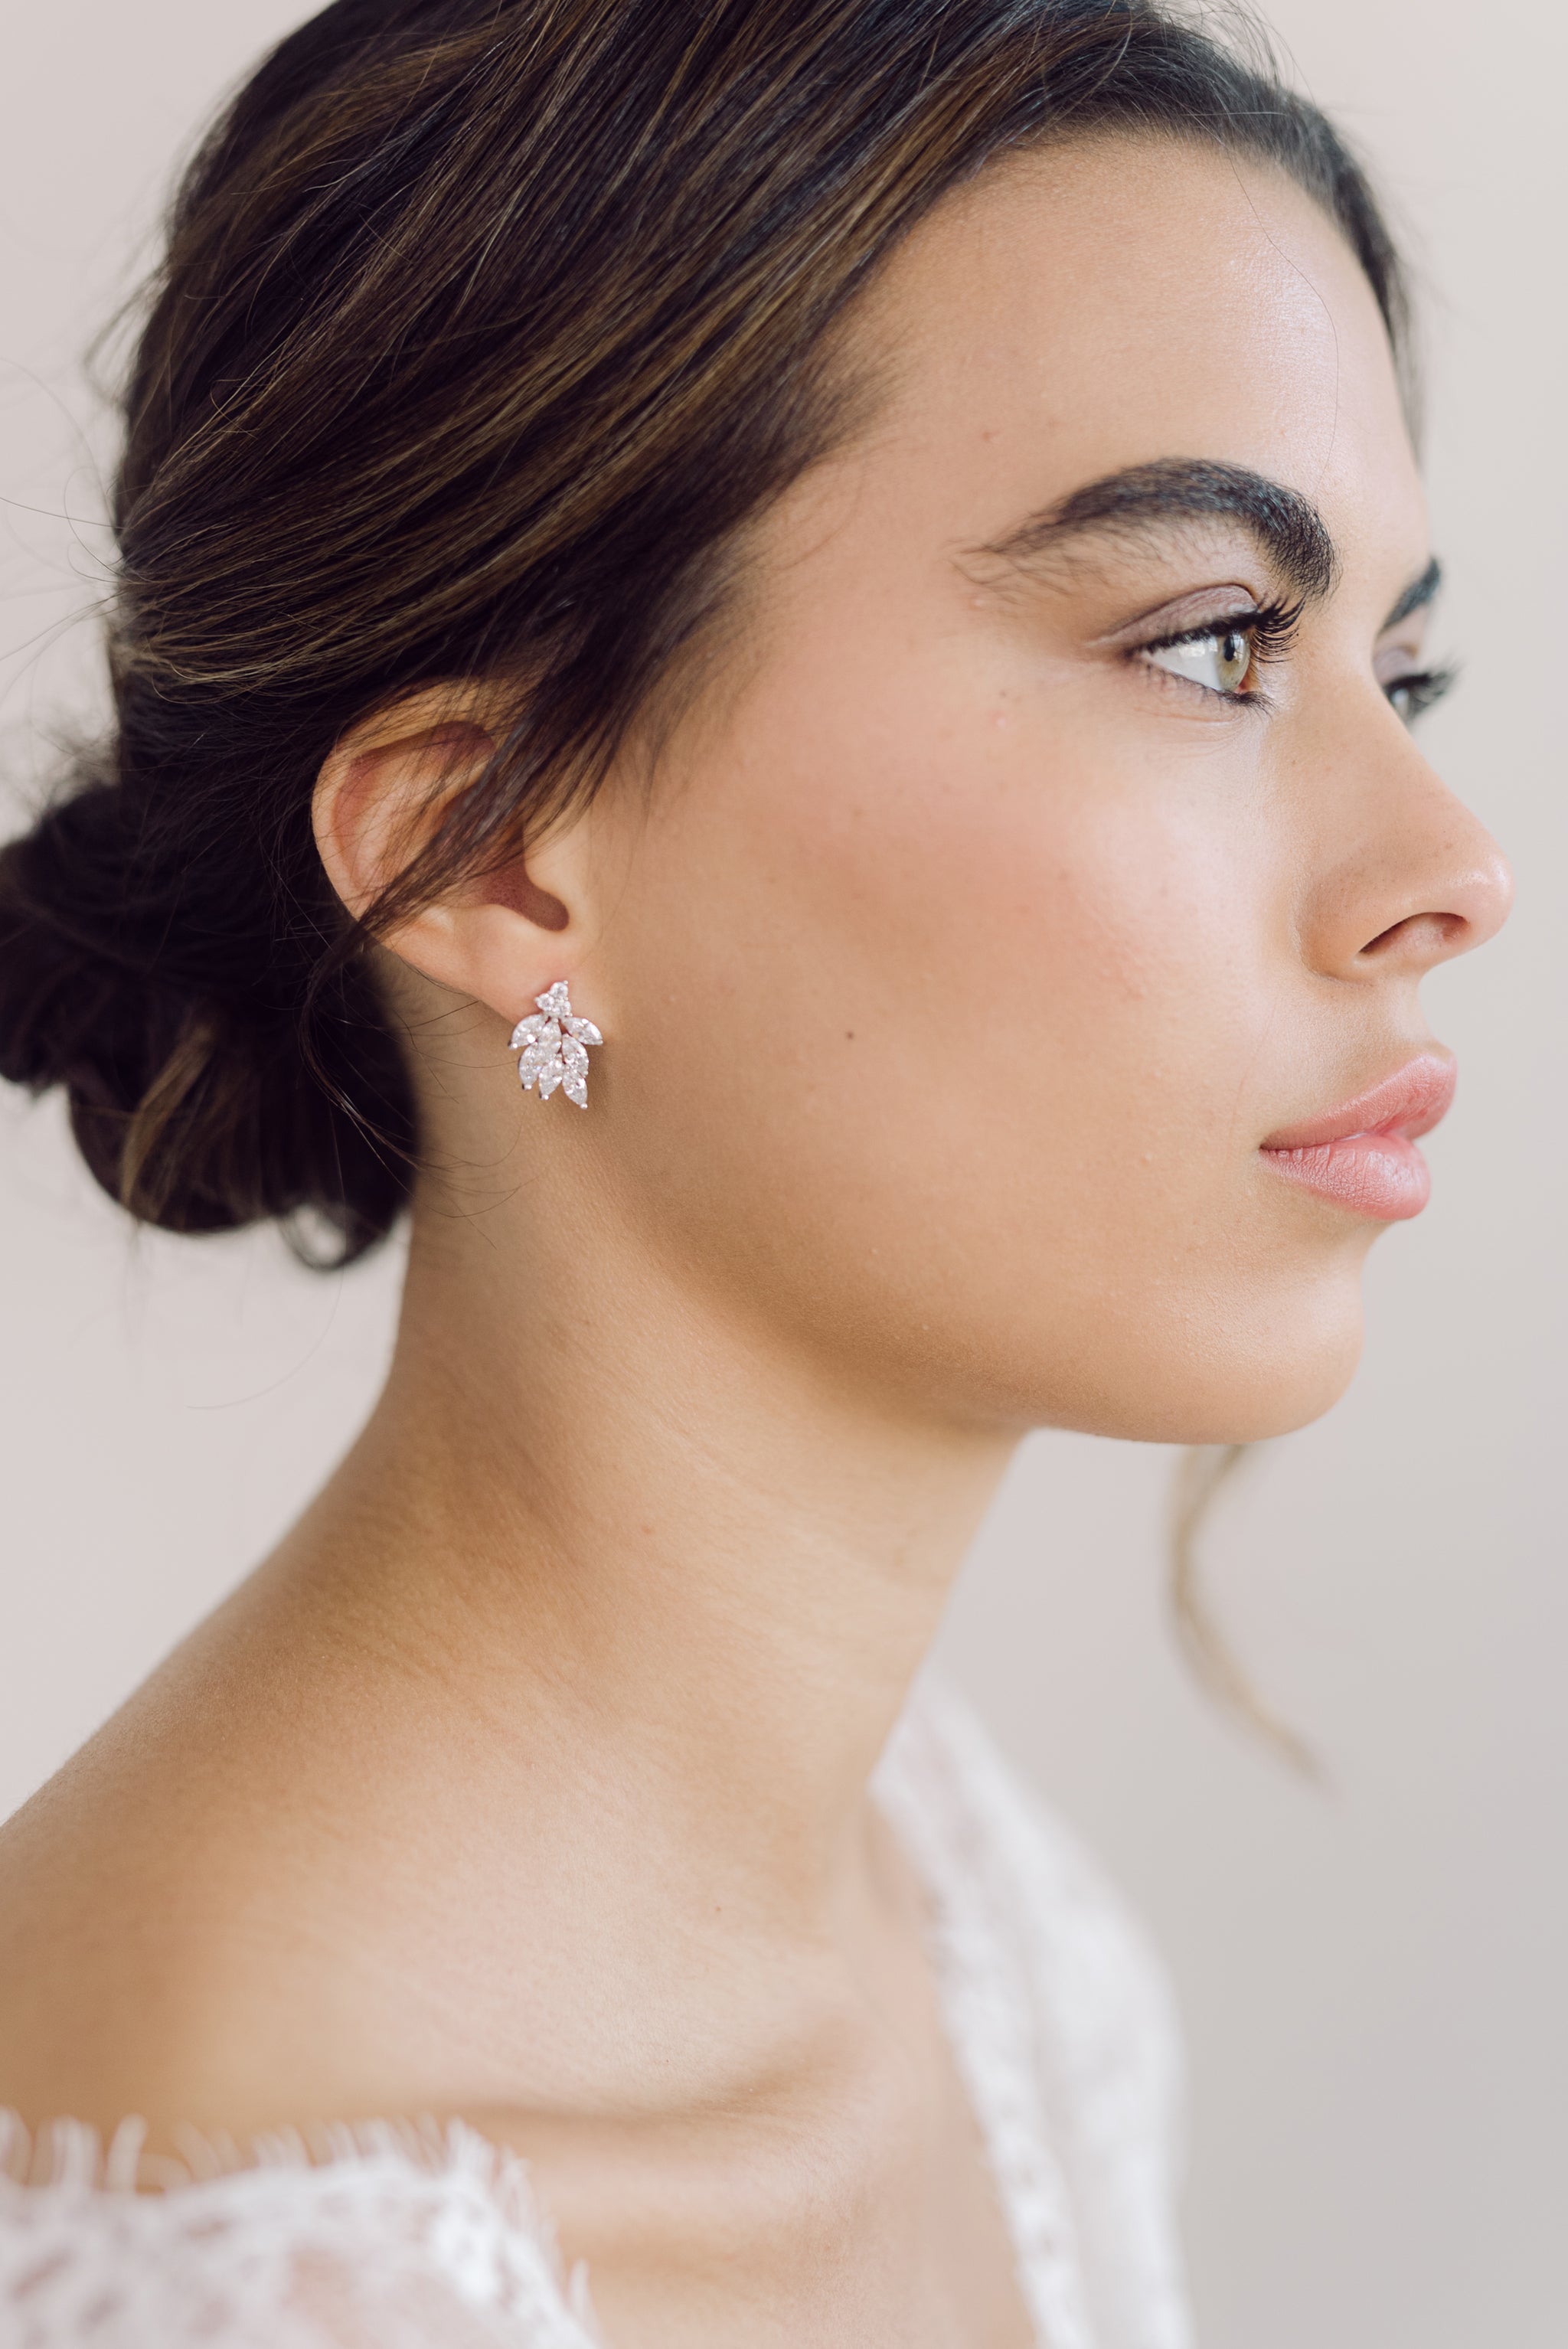 DIANA // Statement stud earrings